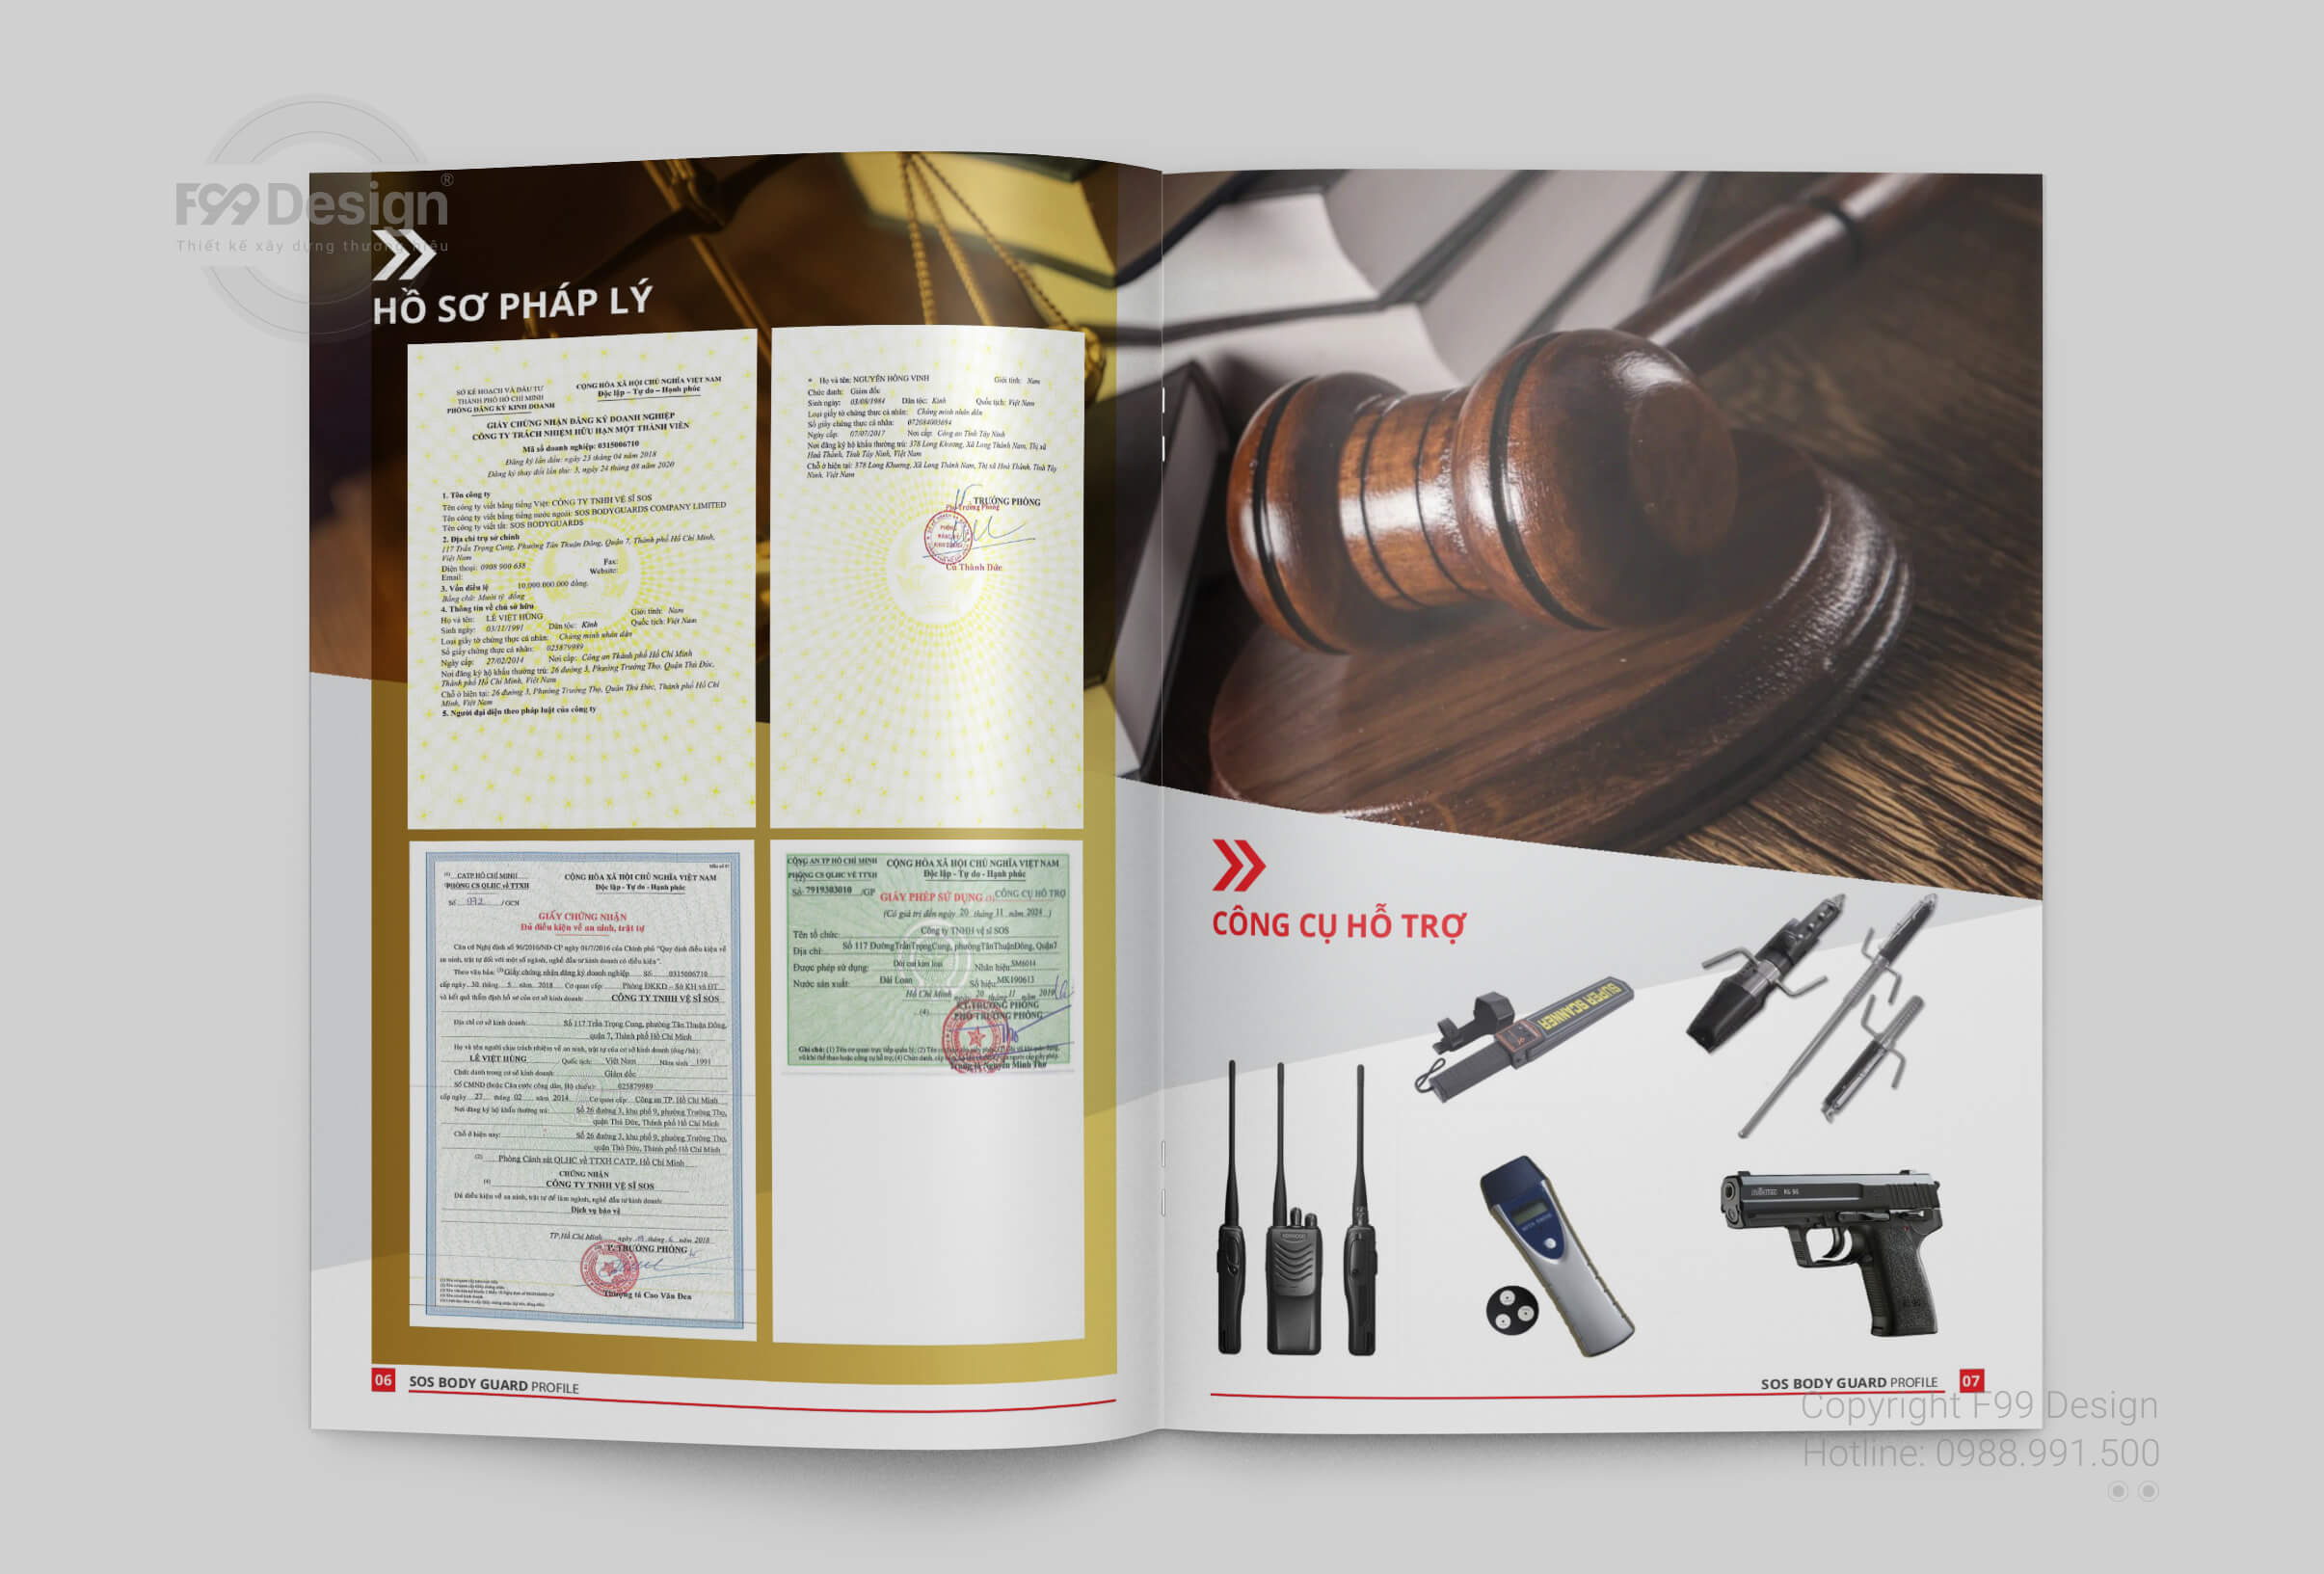 Profile bảo vệ - Hồ sơ pháp lý - Công cụ hỗ trợ